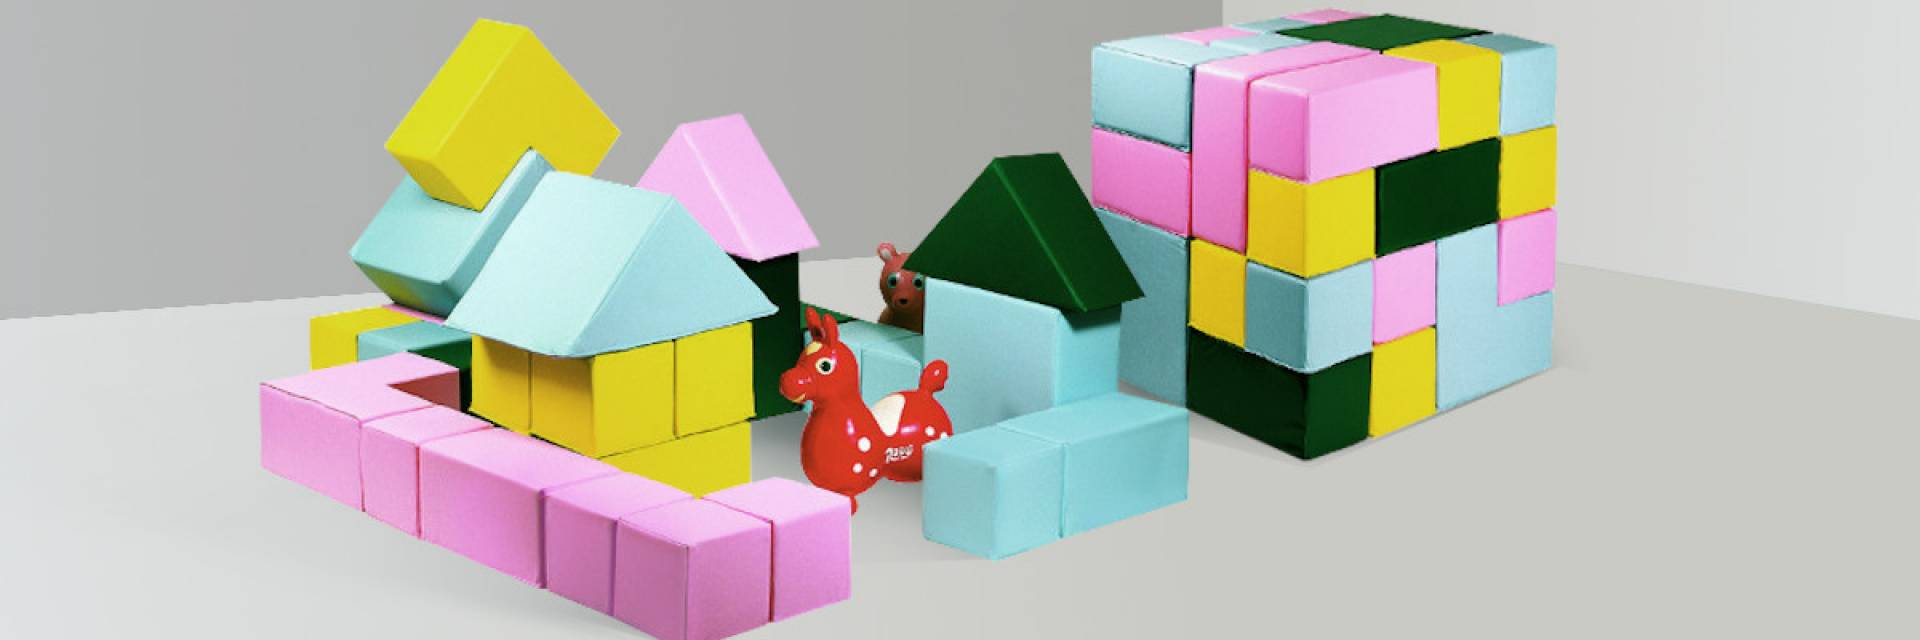 Игровые мягкие модули для детей, купить в Москве - интернет-магазин webmaster-korolev.ru